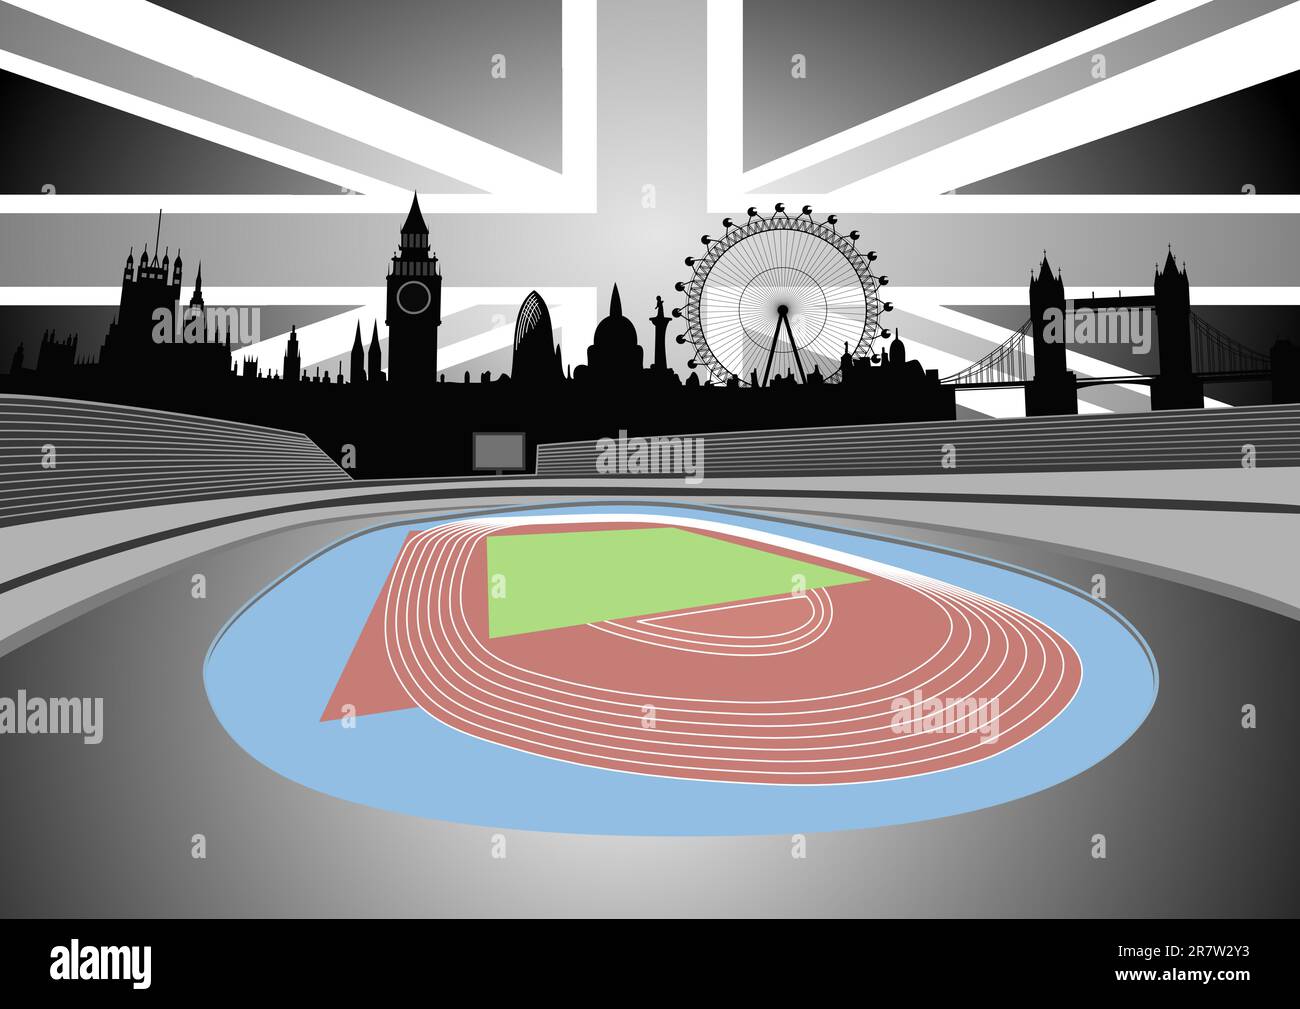 Illustration des Stadions mit der Londoner Skyline - Vektor. Diese Datei ist ein Vektor und kann ohne Qualitätsverlust auf jede Größe skaliert werden. Stock Vektor